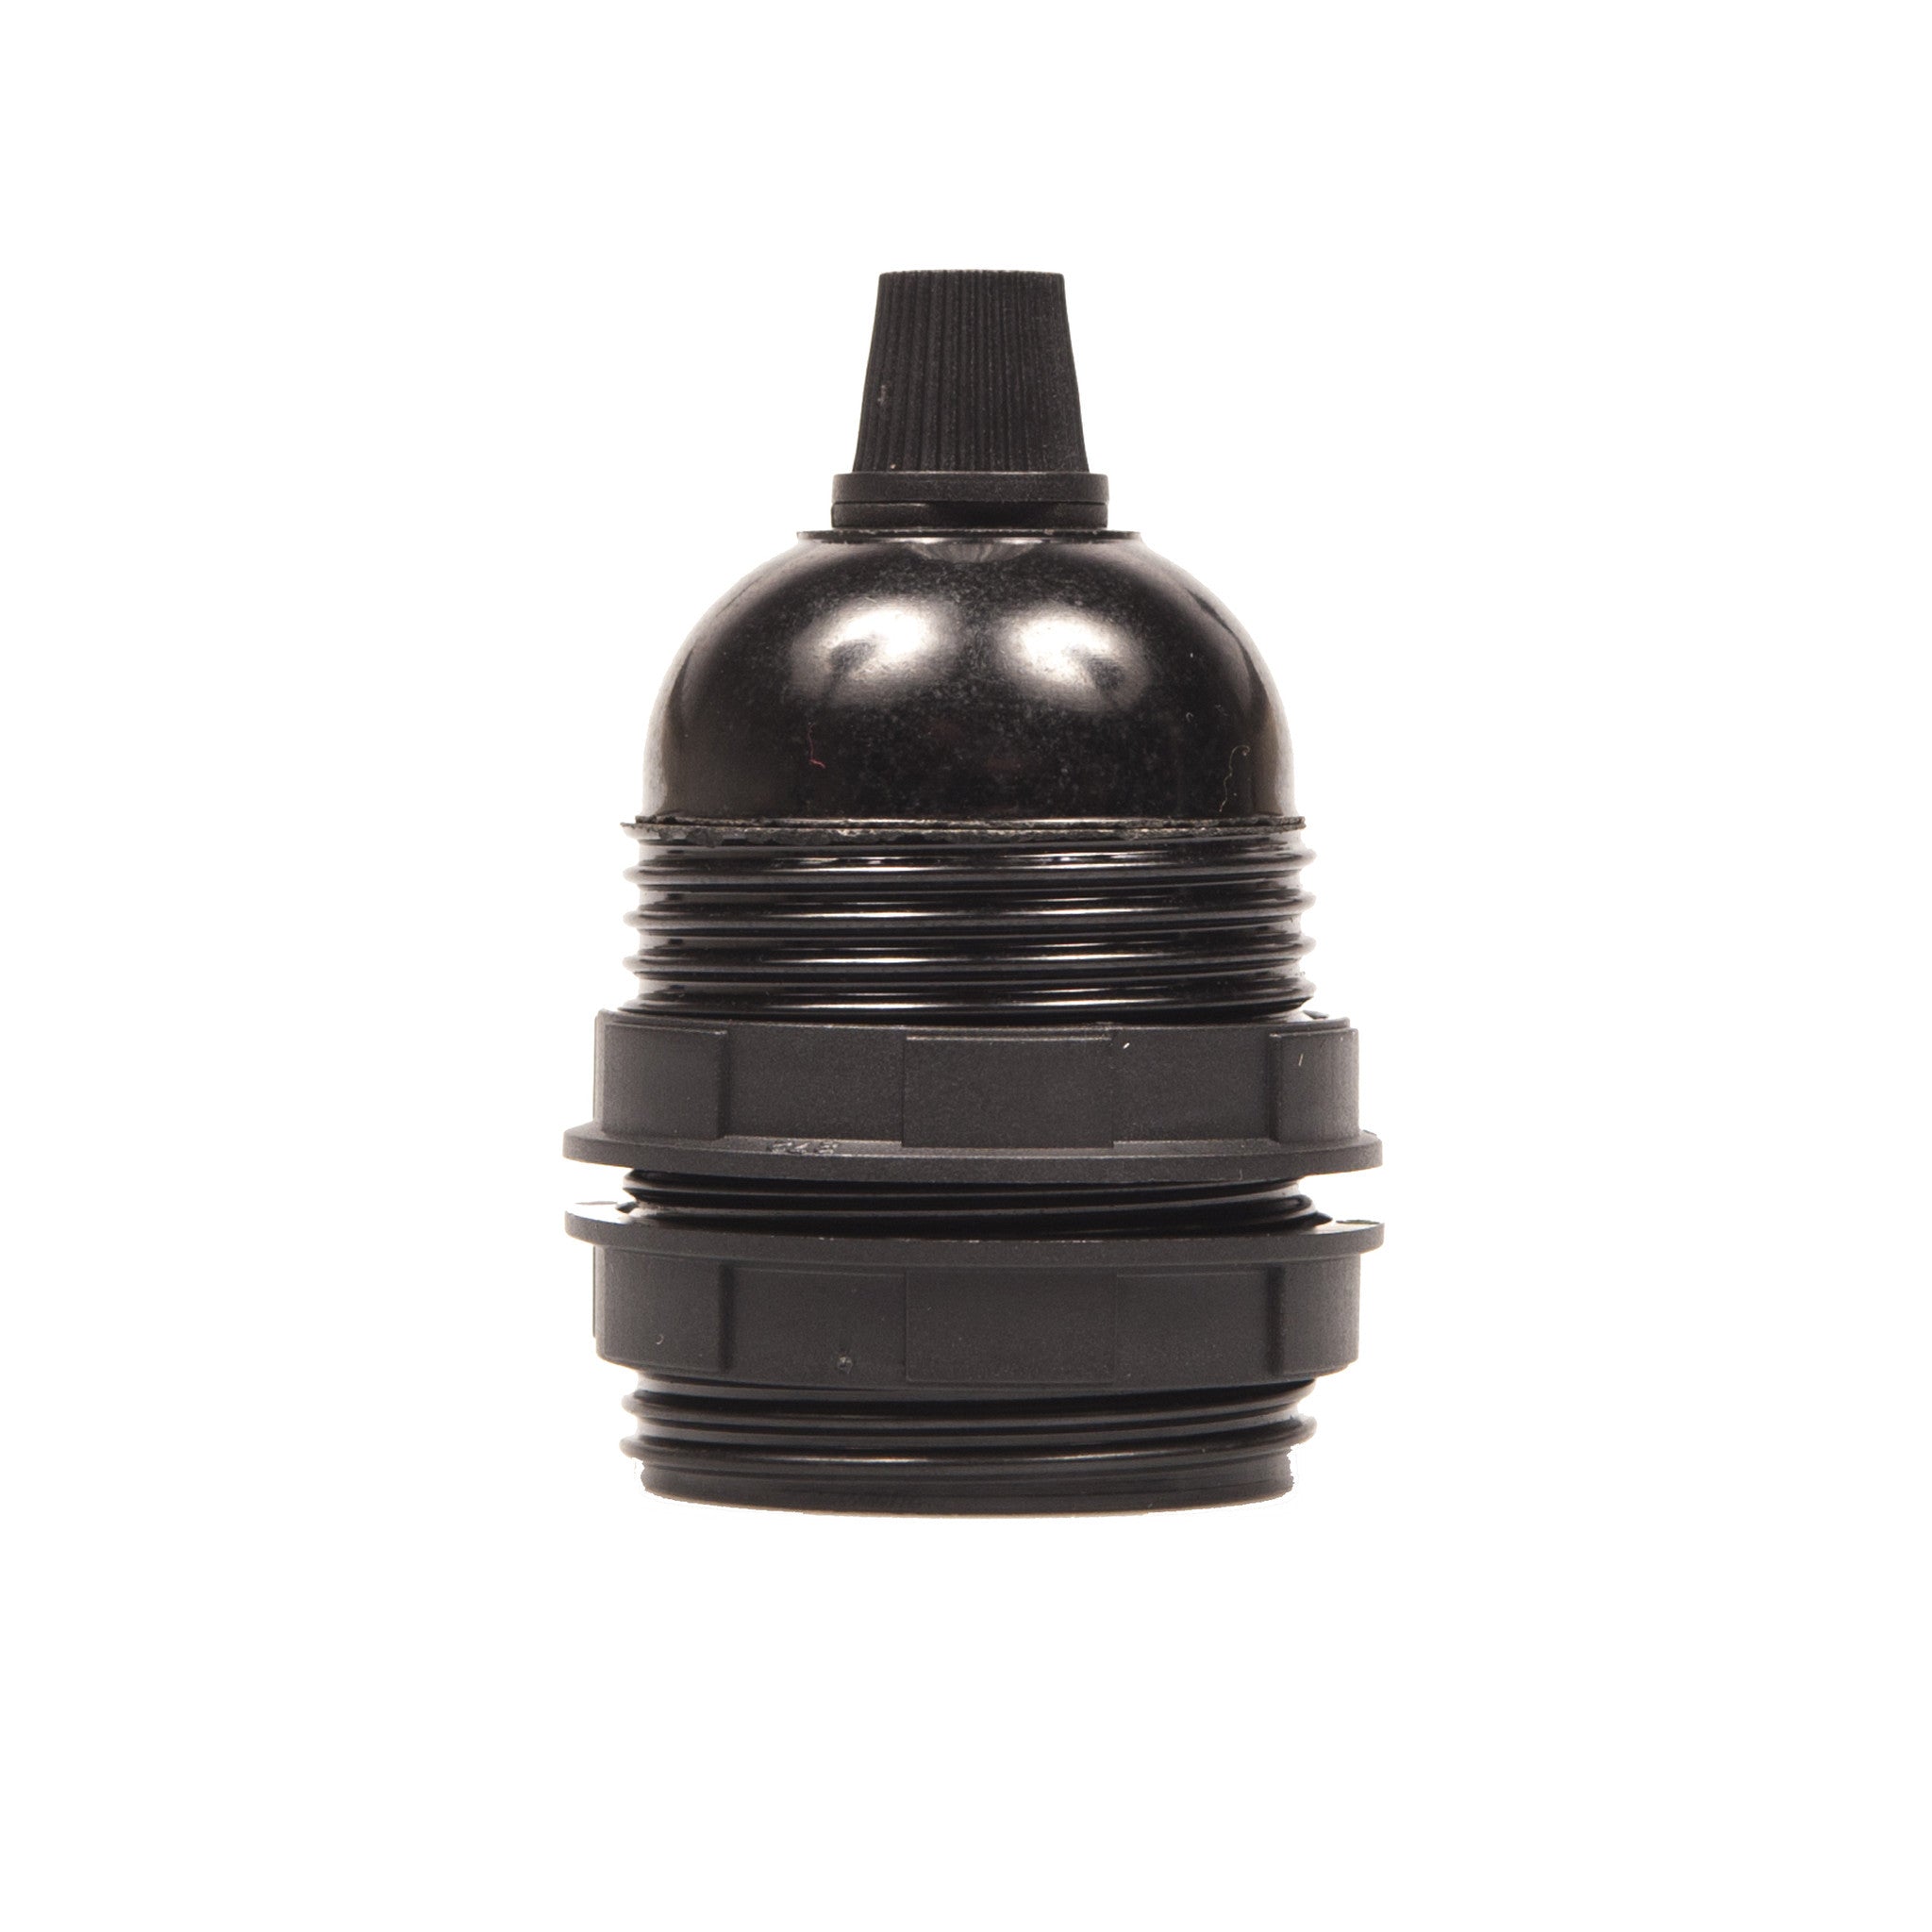 Lampholder - E27 Bakelite Black Plastic with grip